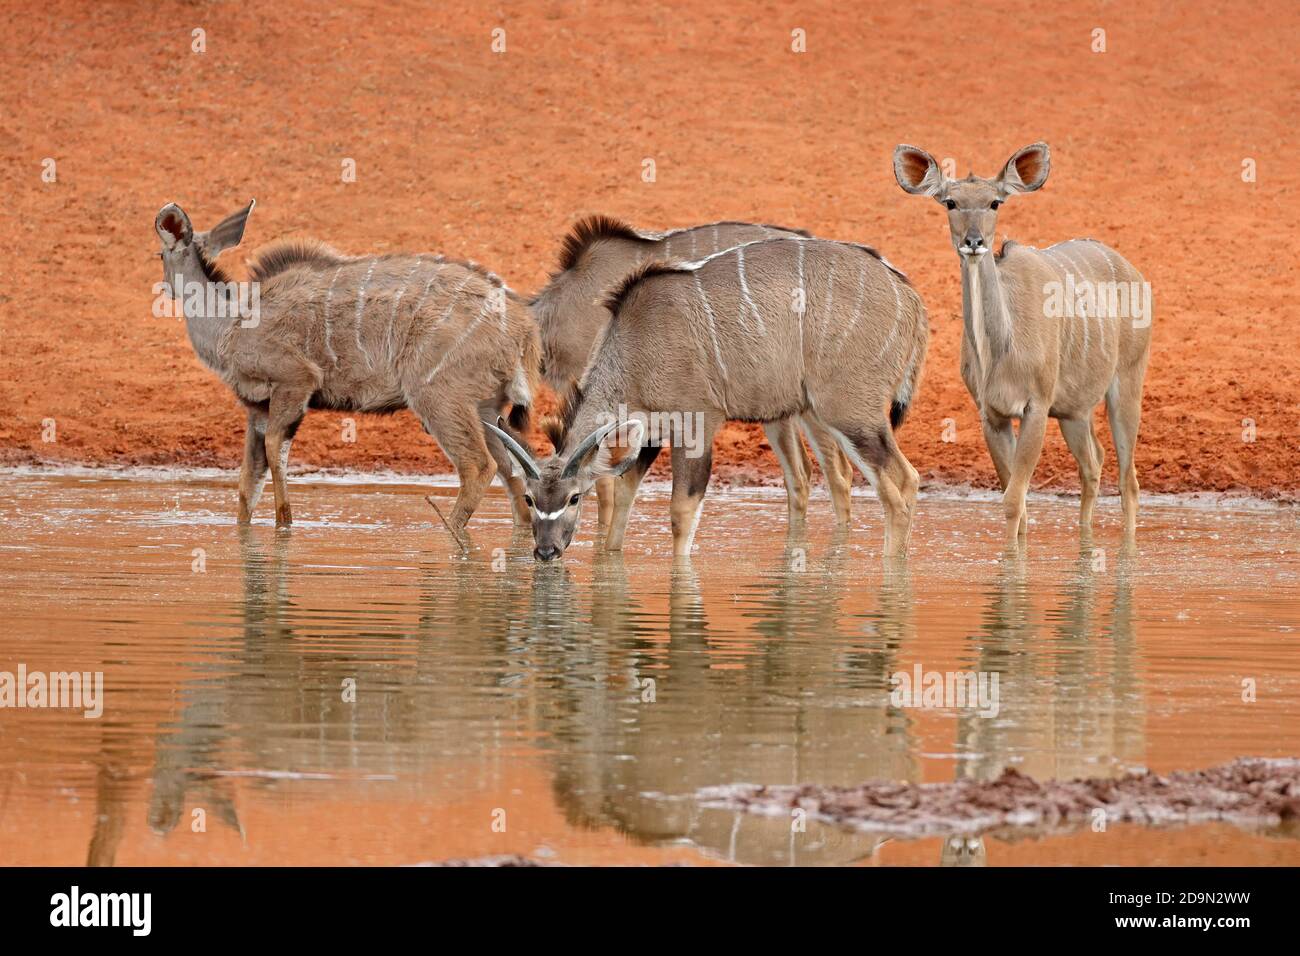 Kudu antelopes (Tragelaphus strepsiceros) drinking at a waterhole, Mokala National Park, South Africa Stock Photo